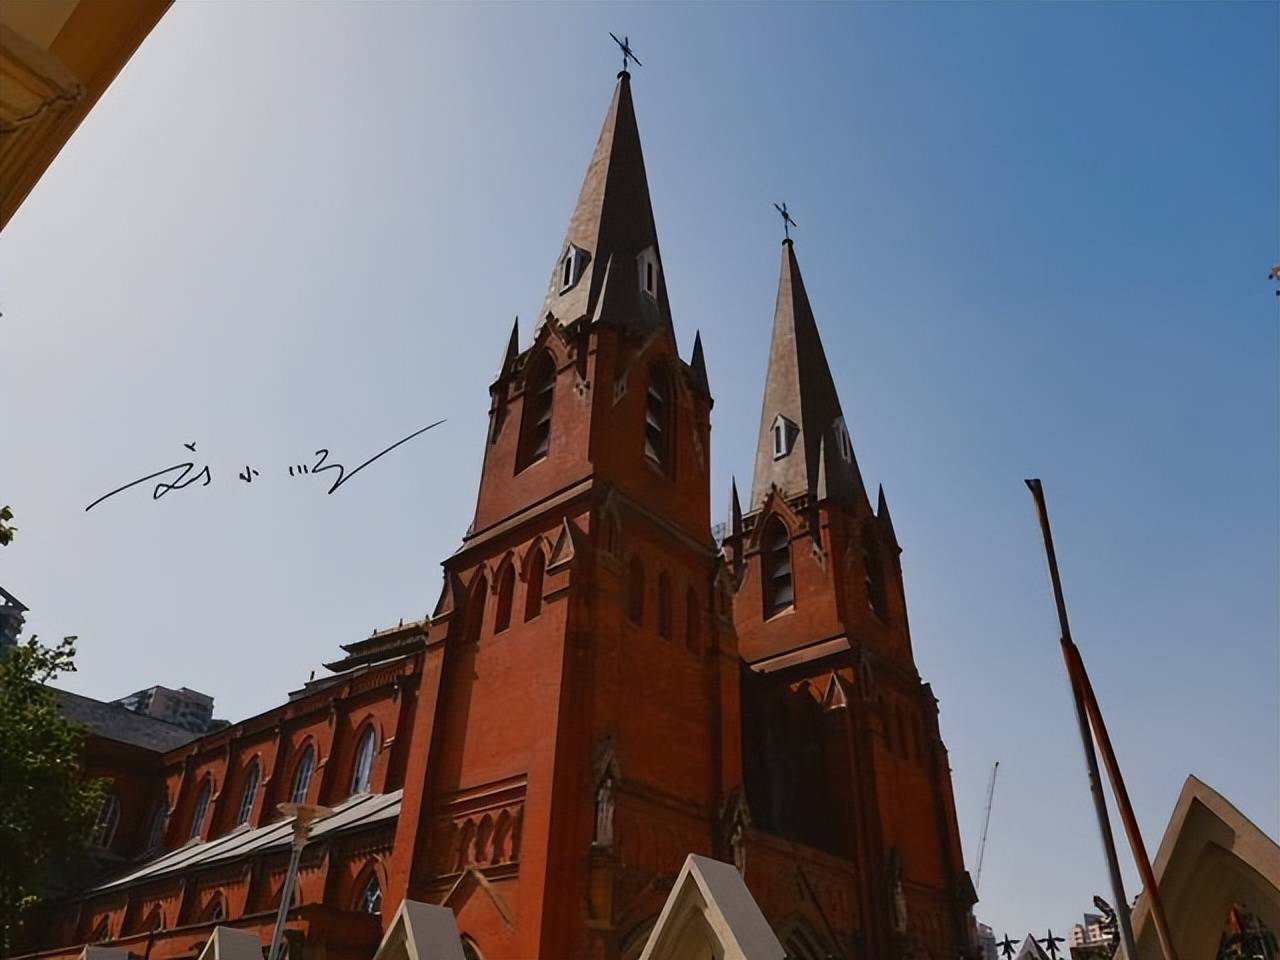 上海有一座著名教堂，已有百年历史，曾被誉为“远东第一大教堂”